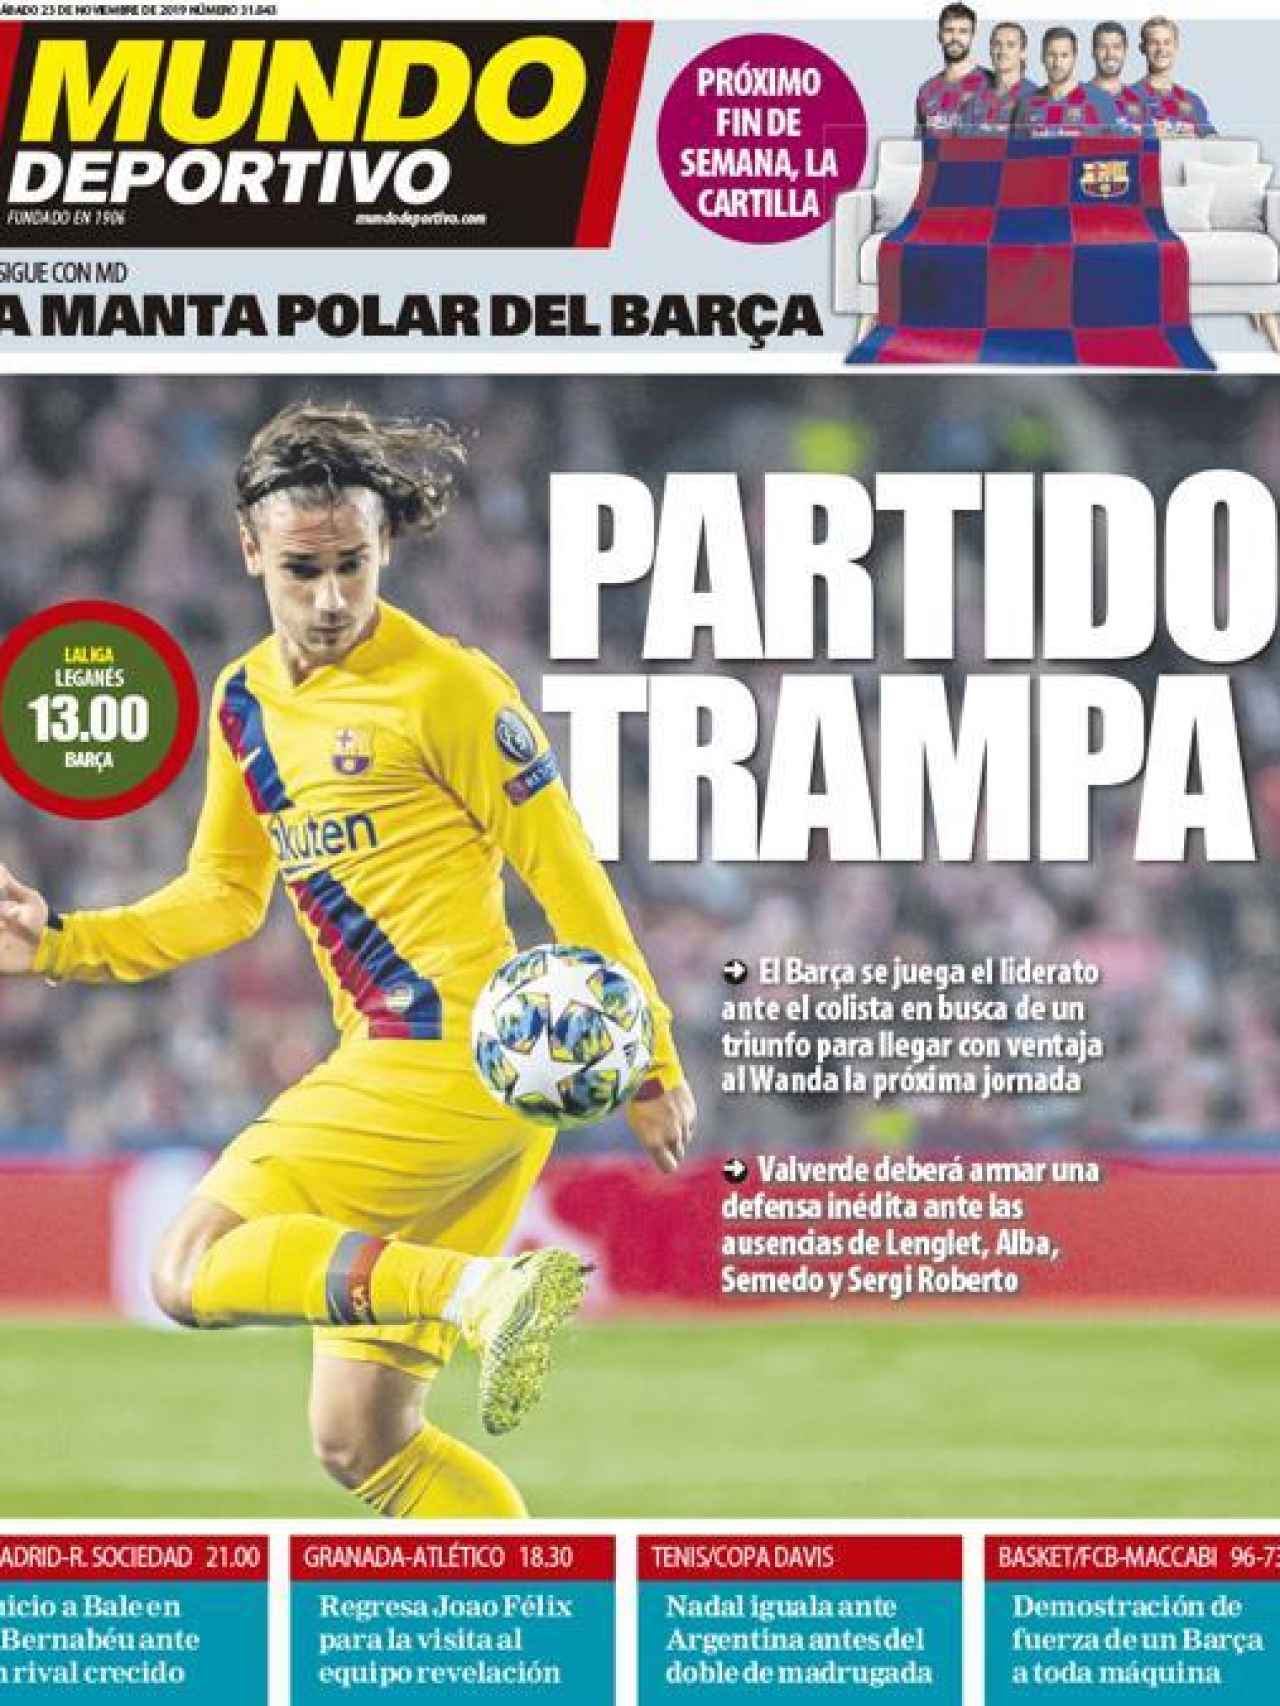 La portada del diario Mundo Deportivo (23/11/2019)